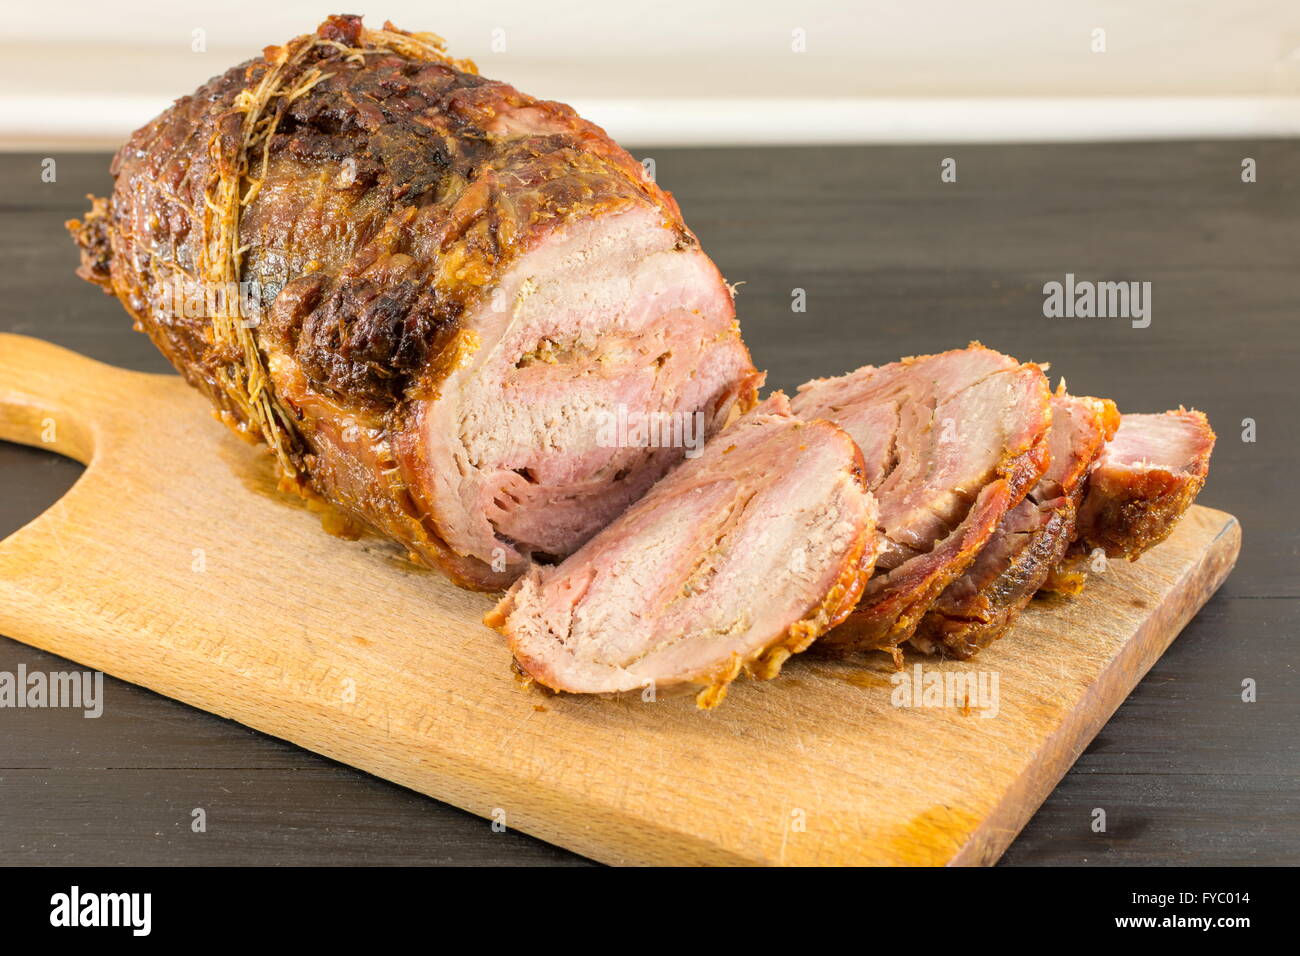 De porc rôti de viande sur une planche à découper sur un tableau noir Banque D'Images